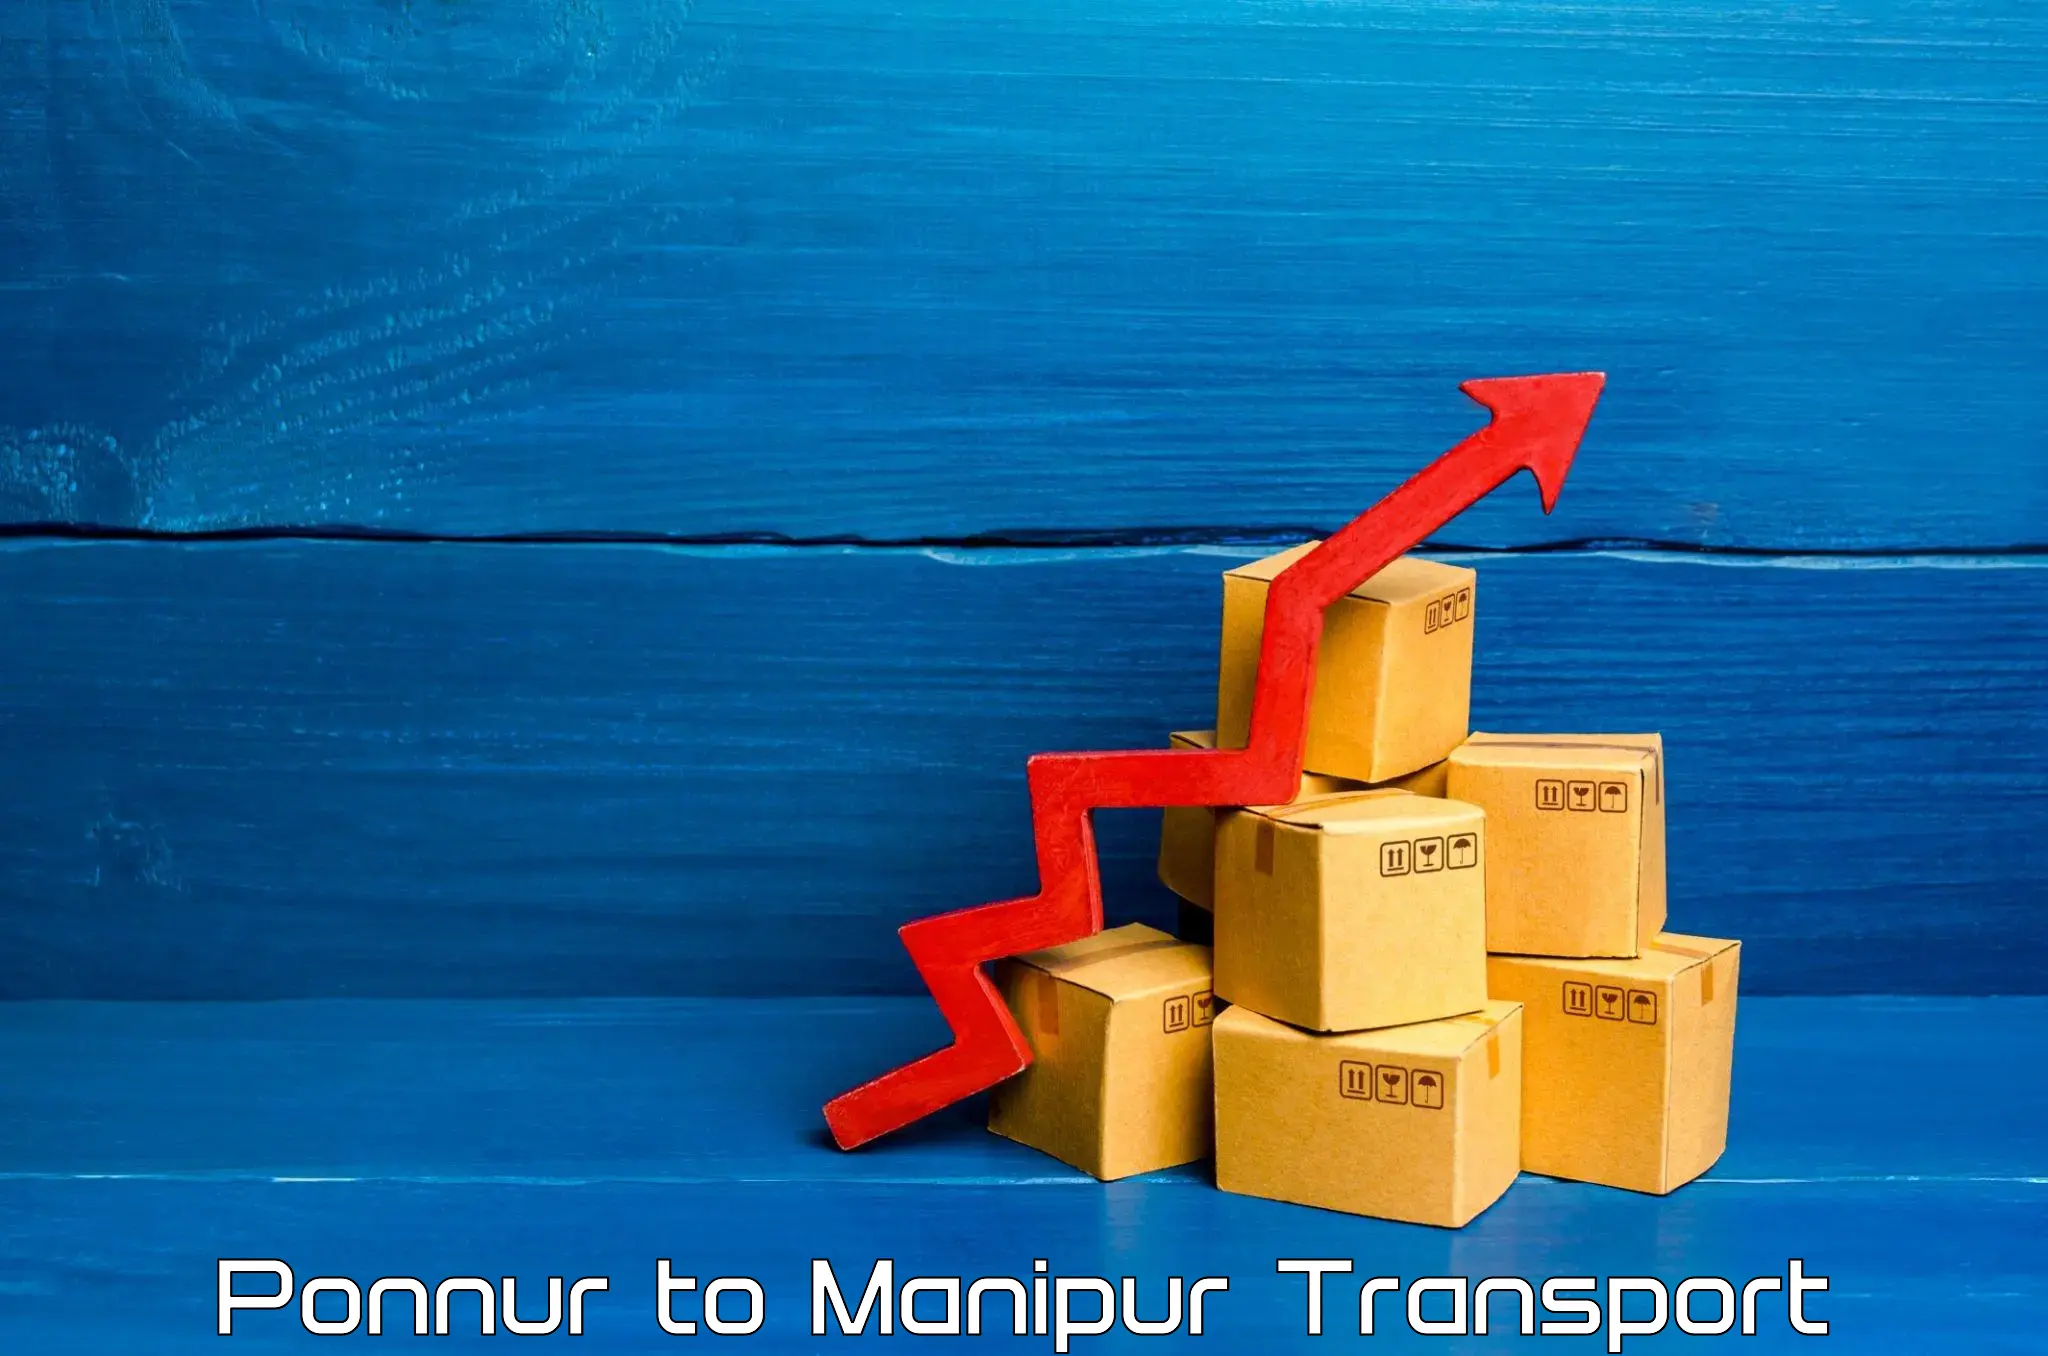 Online transport service Ponnur to Manipur